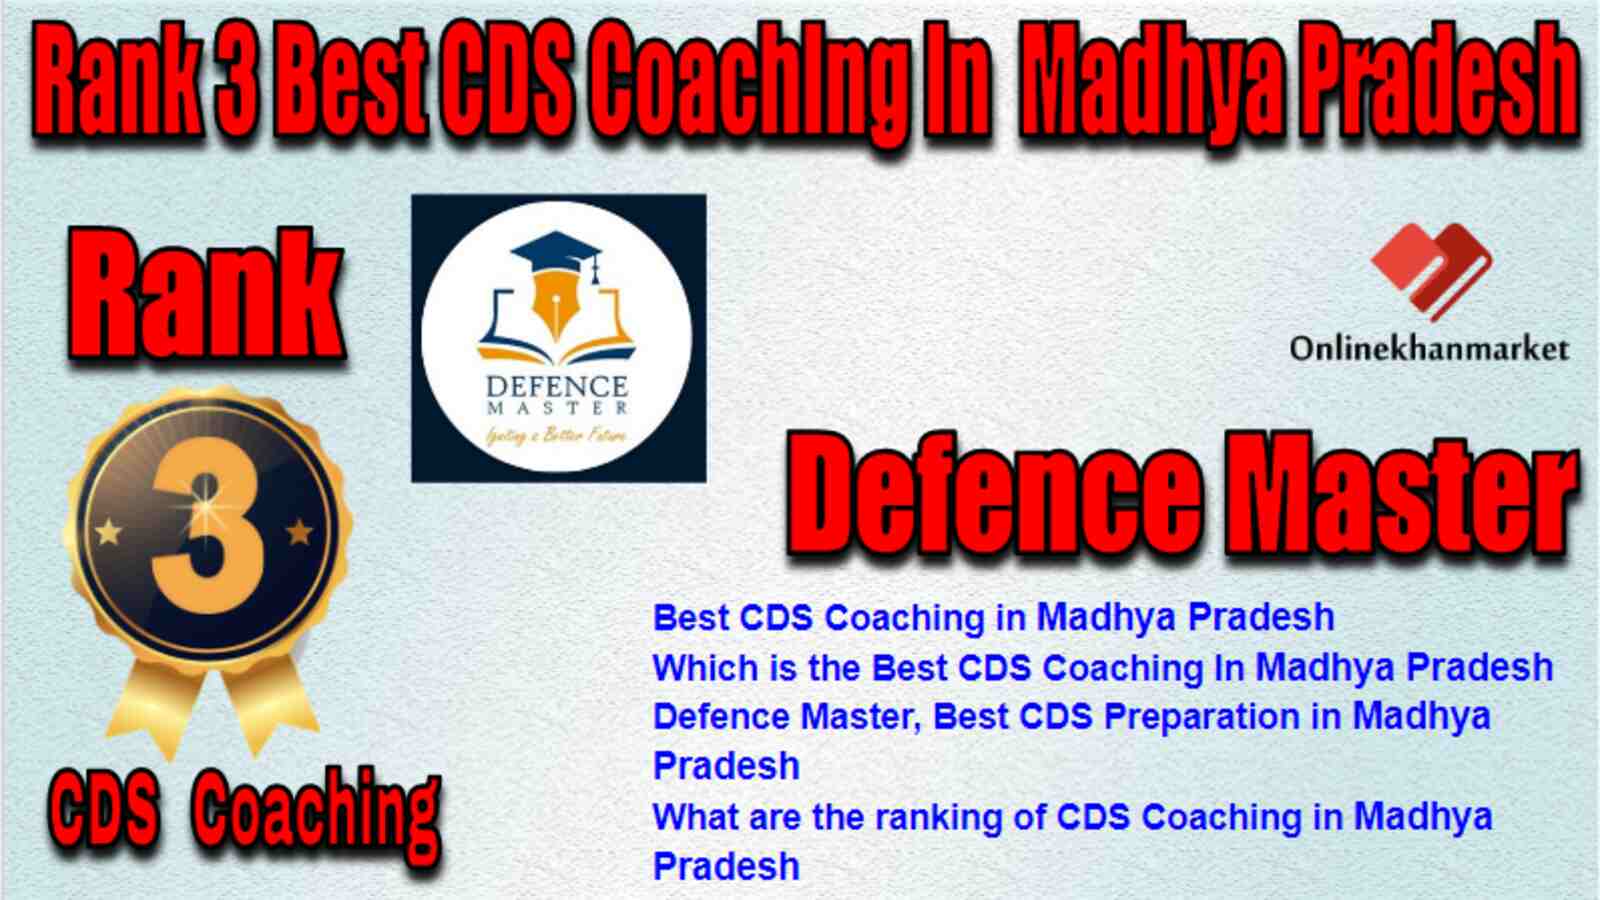 Rank 3 Best CDS Coaching in Madhya Pradesh